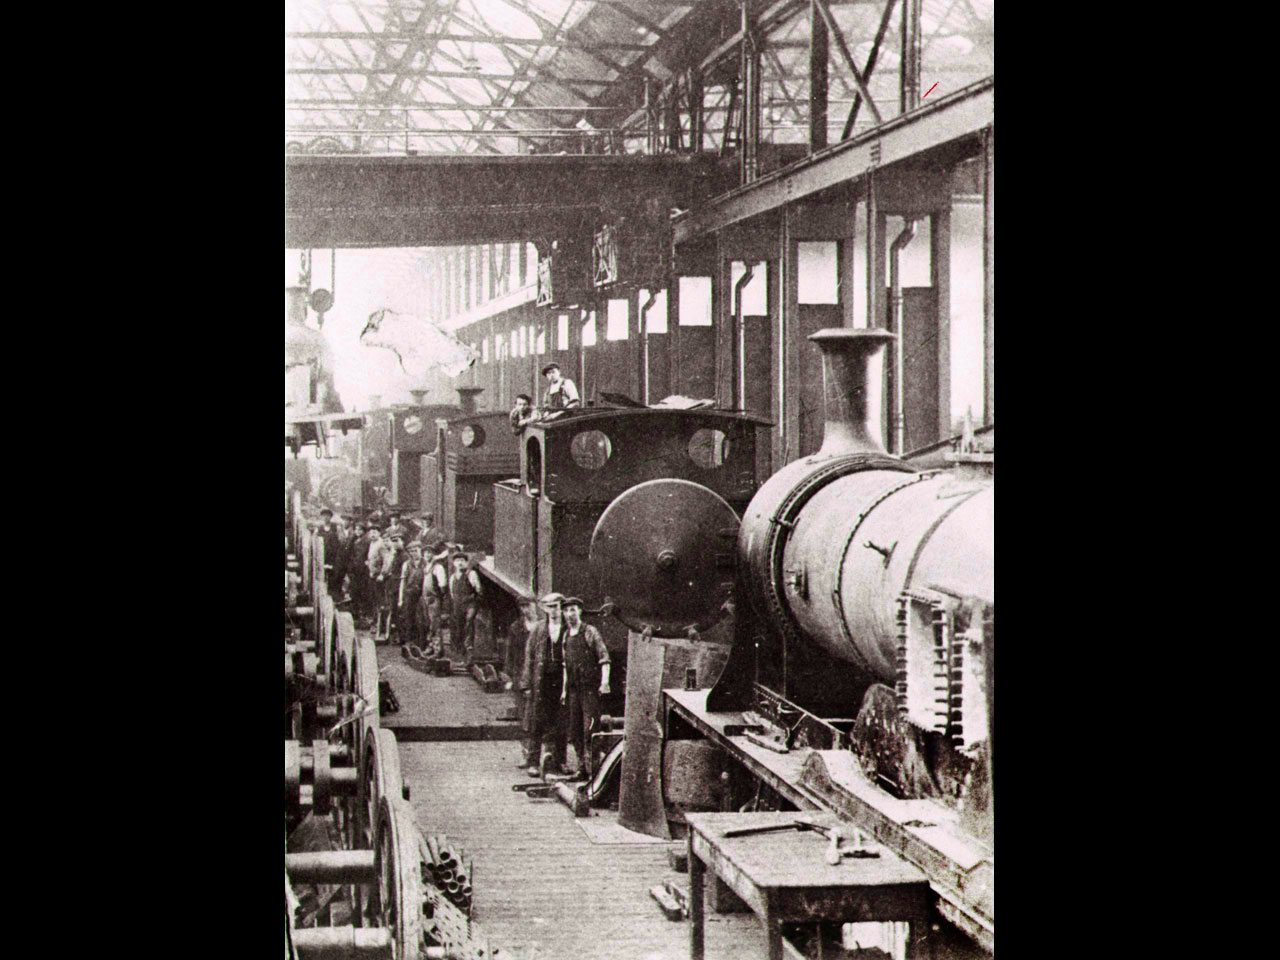 Locomotive Works